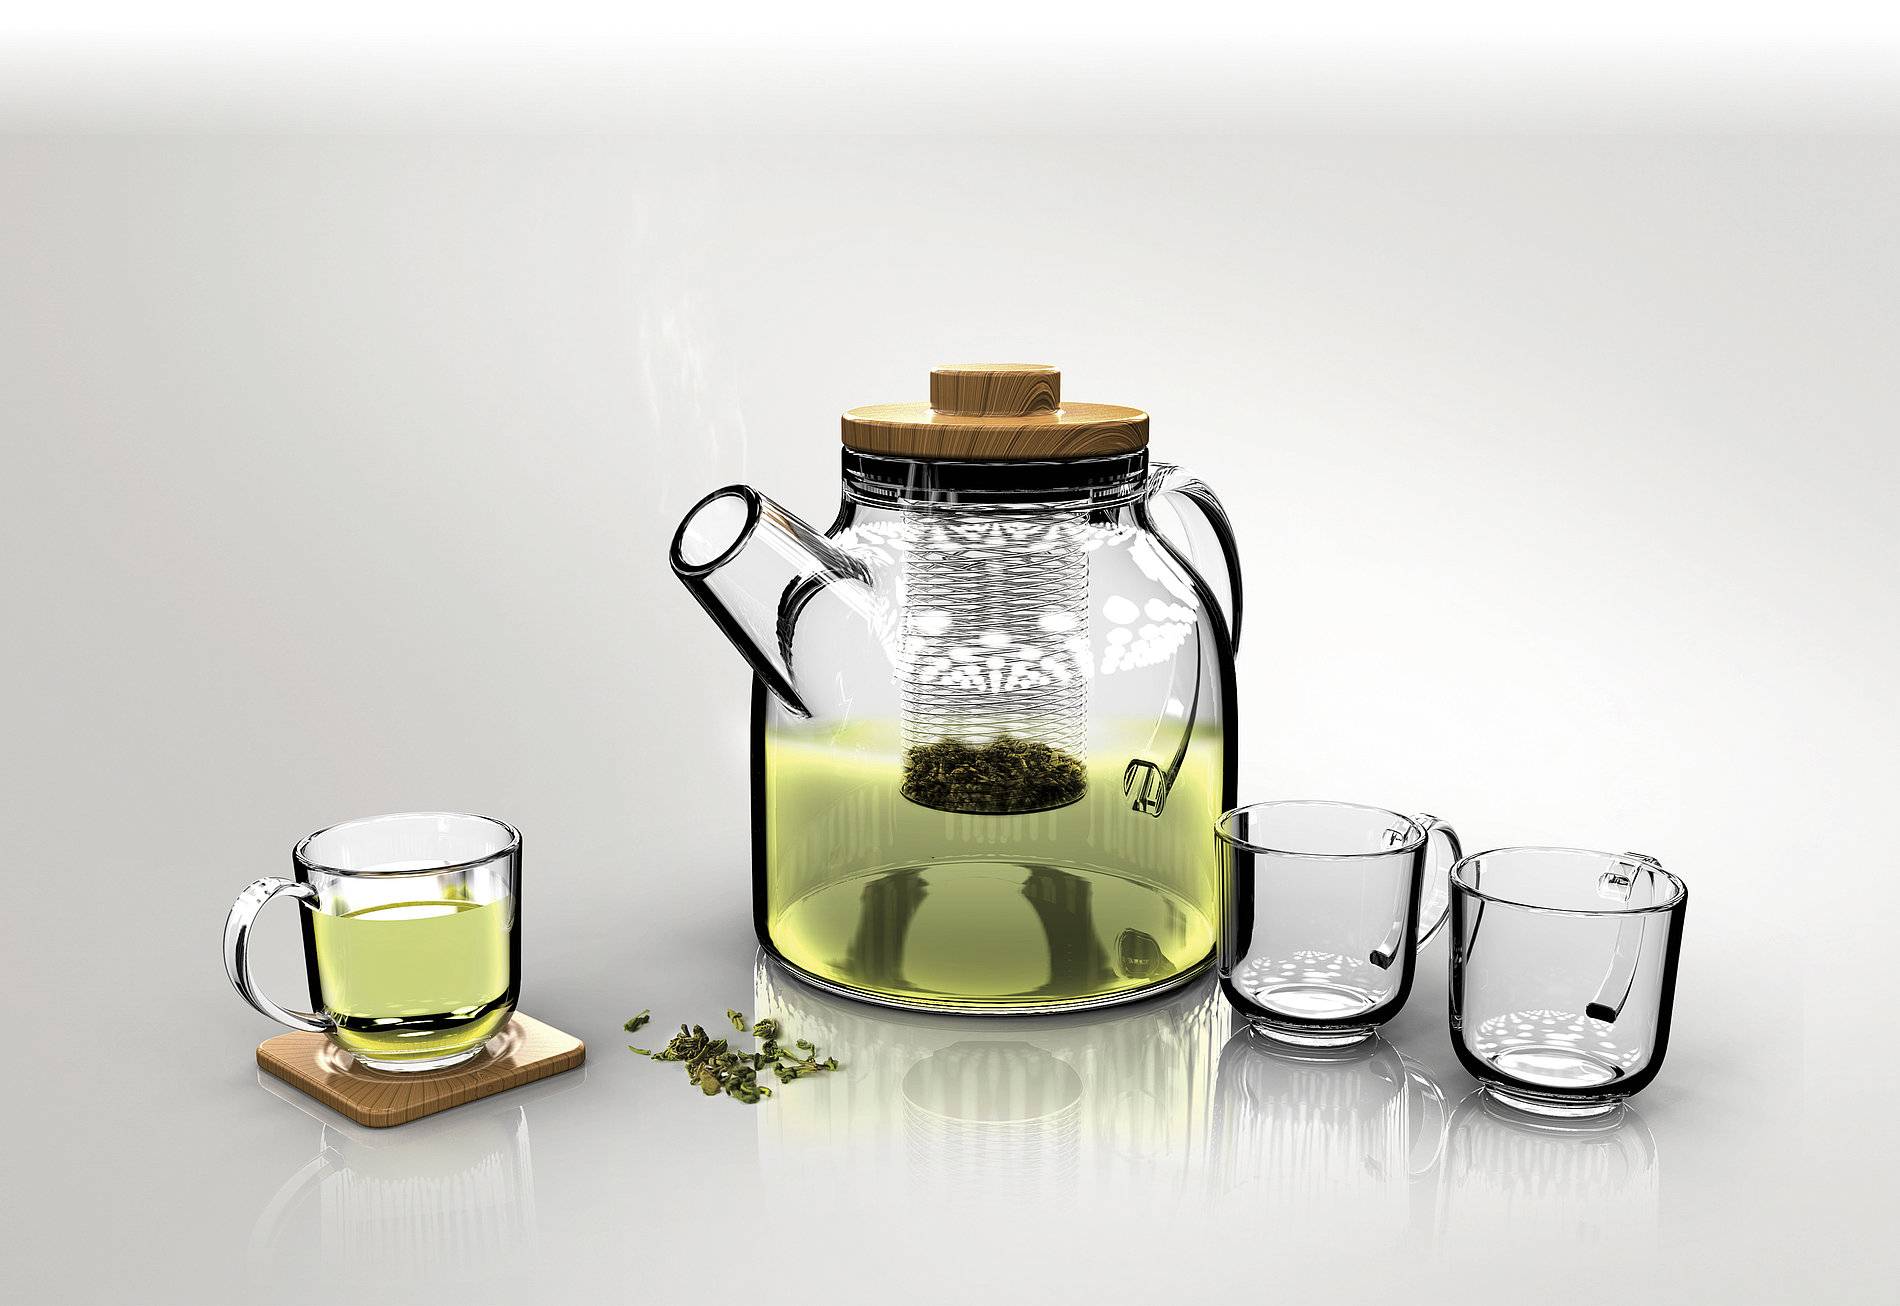 Выбираем чайник для заваривания чая: стеклянный или фарфоровый